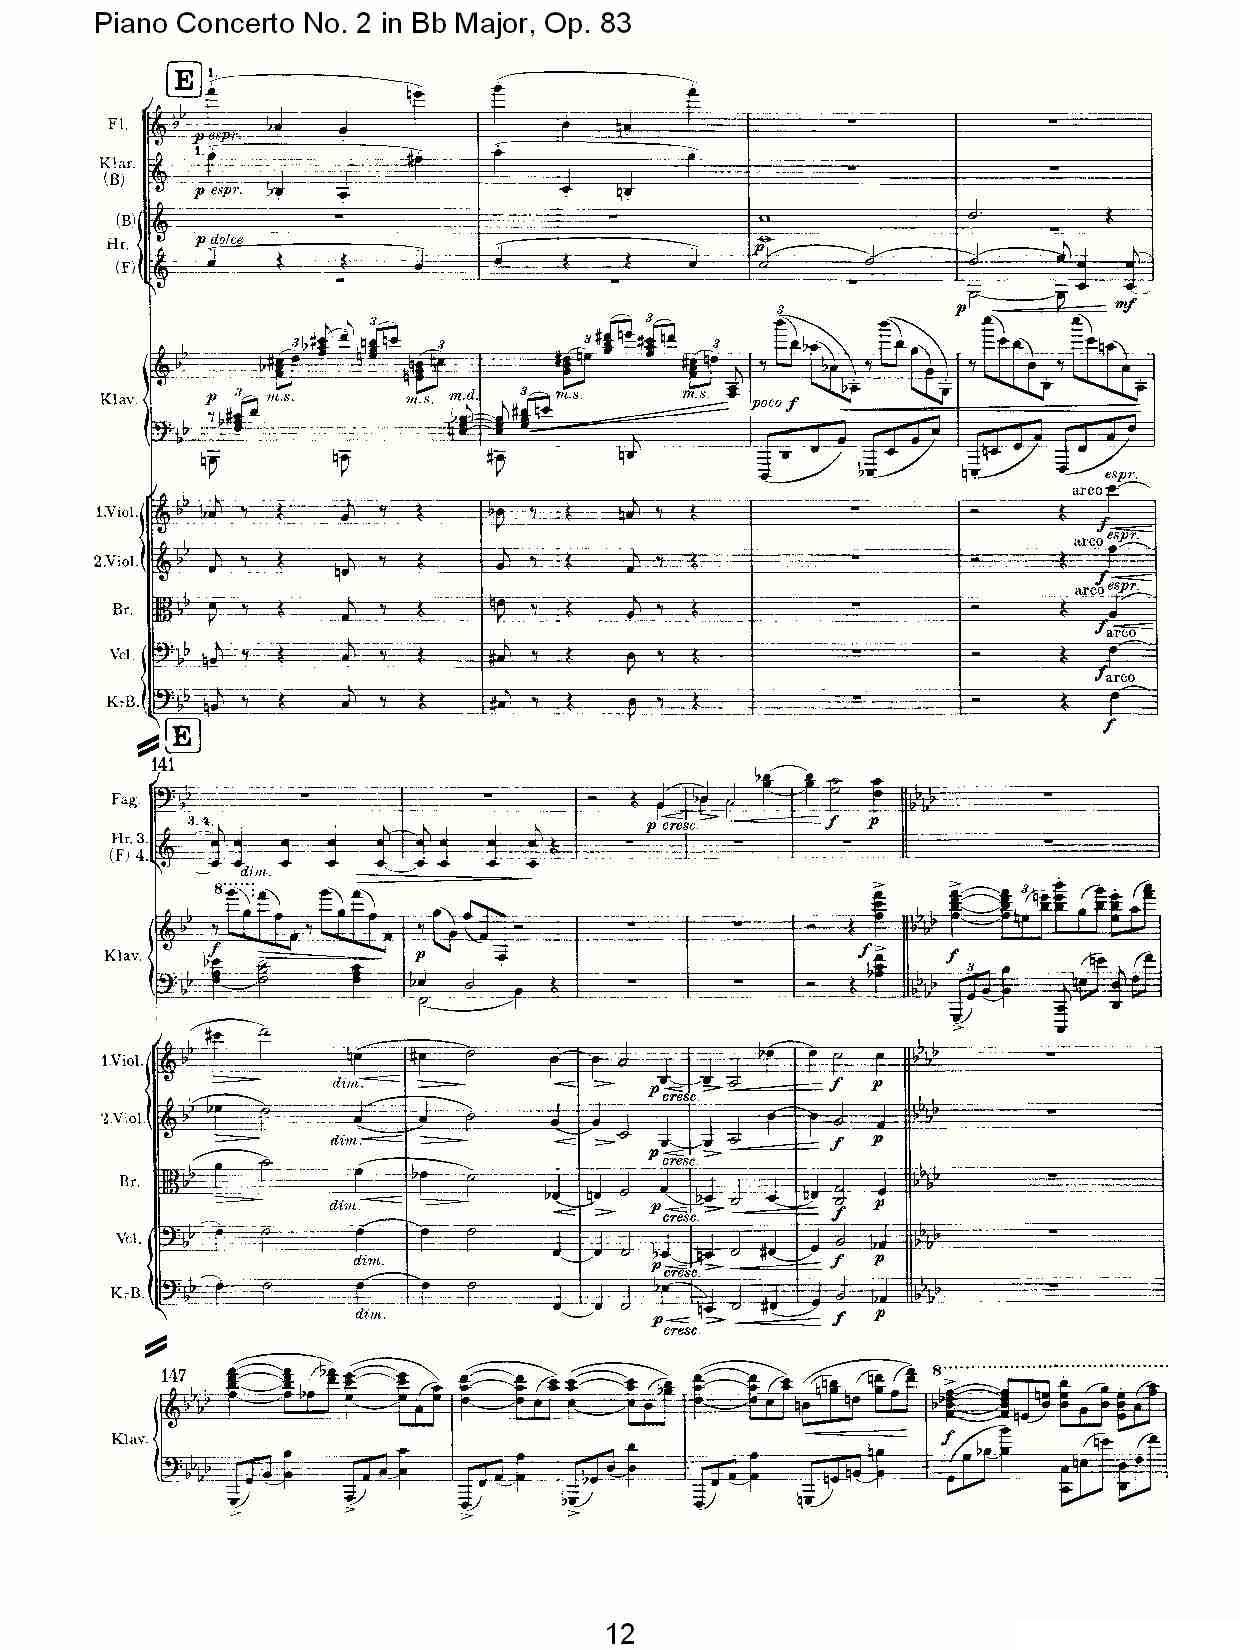 Bb大调钢琴第二协奏曲, Op.83第一乐章（一）钢琴曲谱（图13）